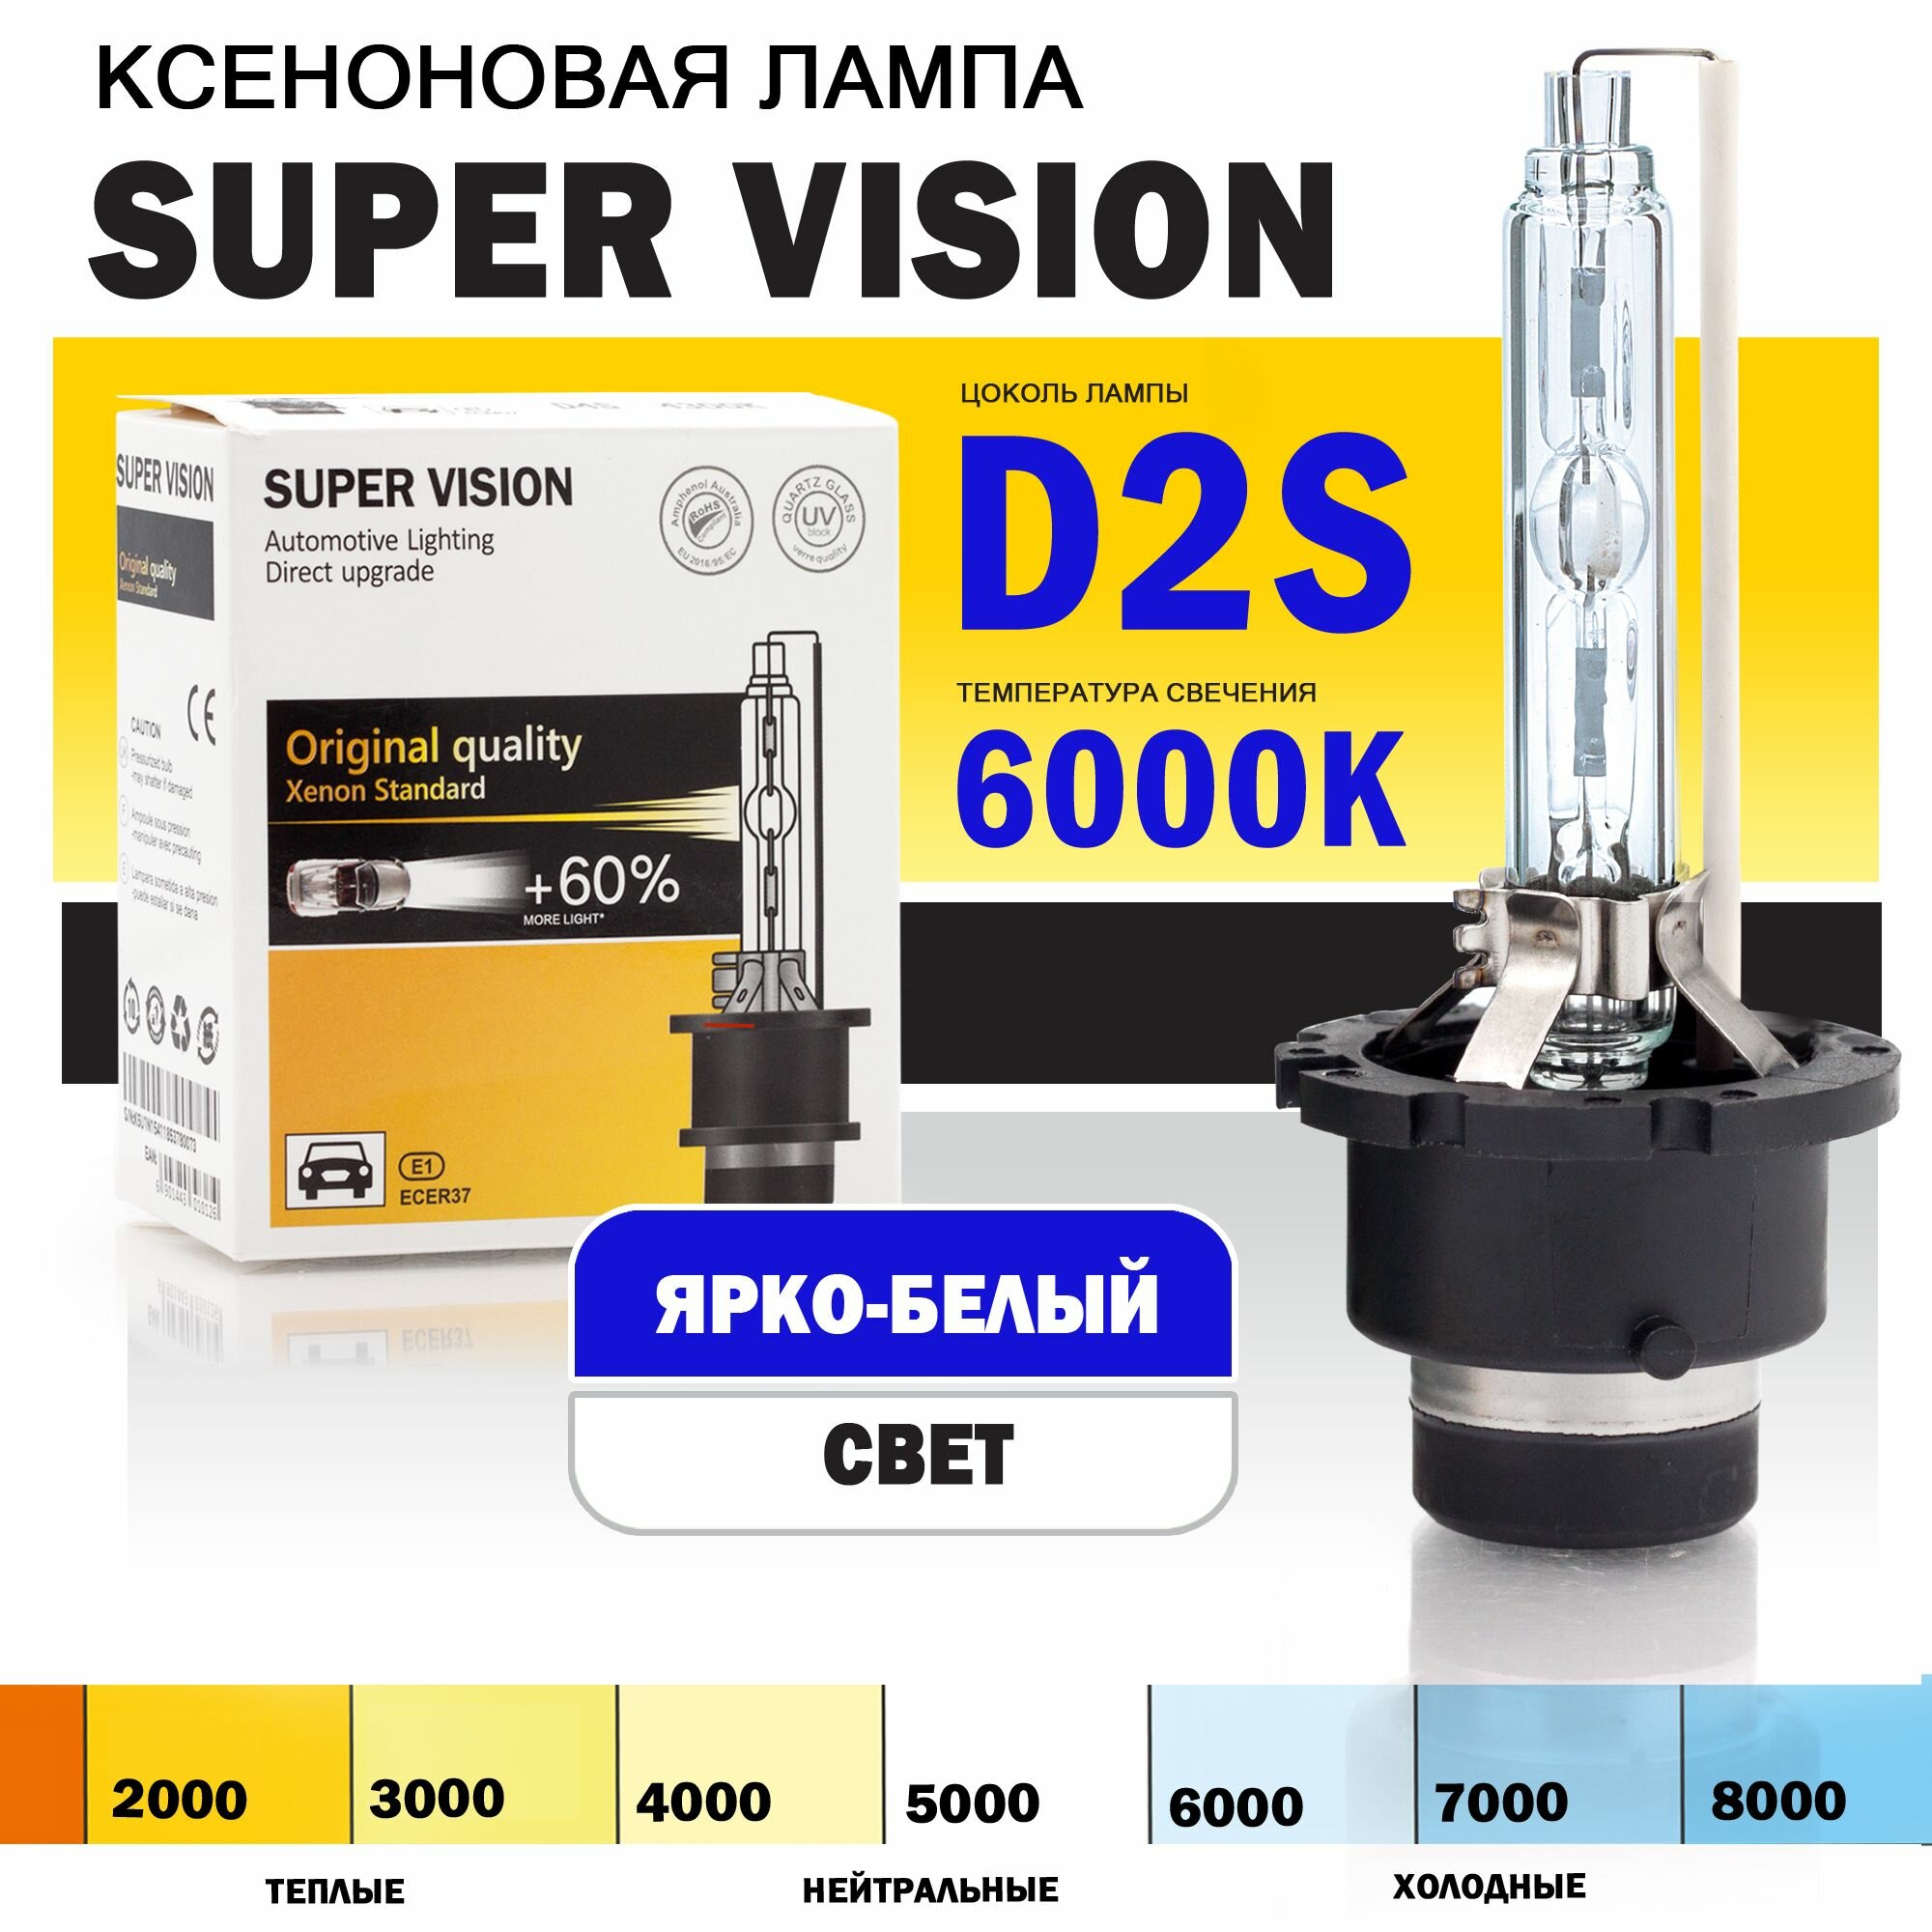 Ксеноновая лампа Super Vision D2S 6000K для автомобиля штатный ксенон питание 12V мощность 35W 1 штука